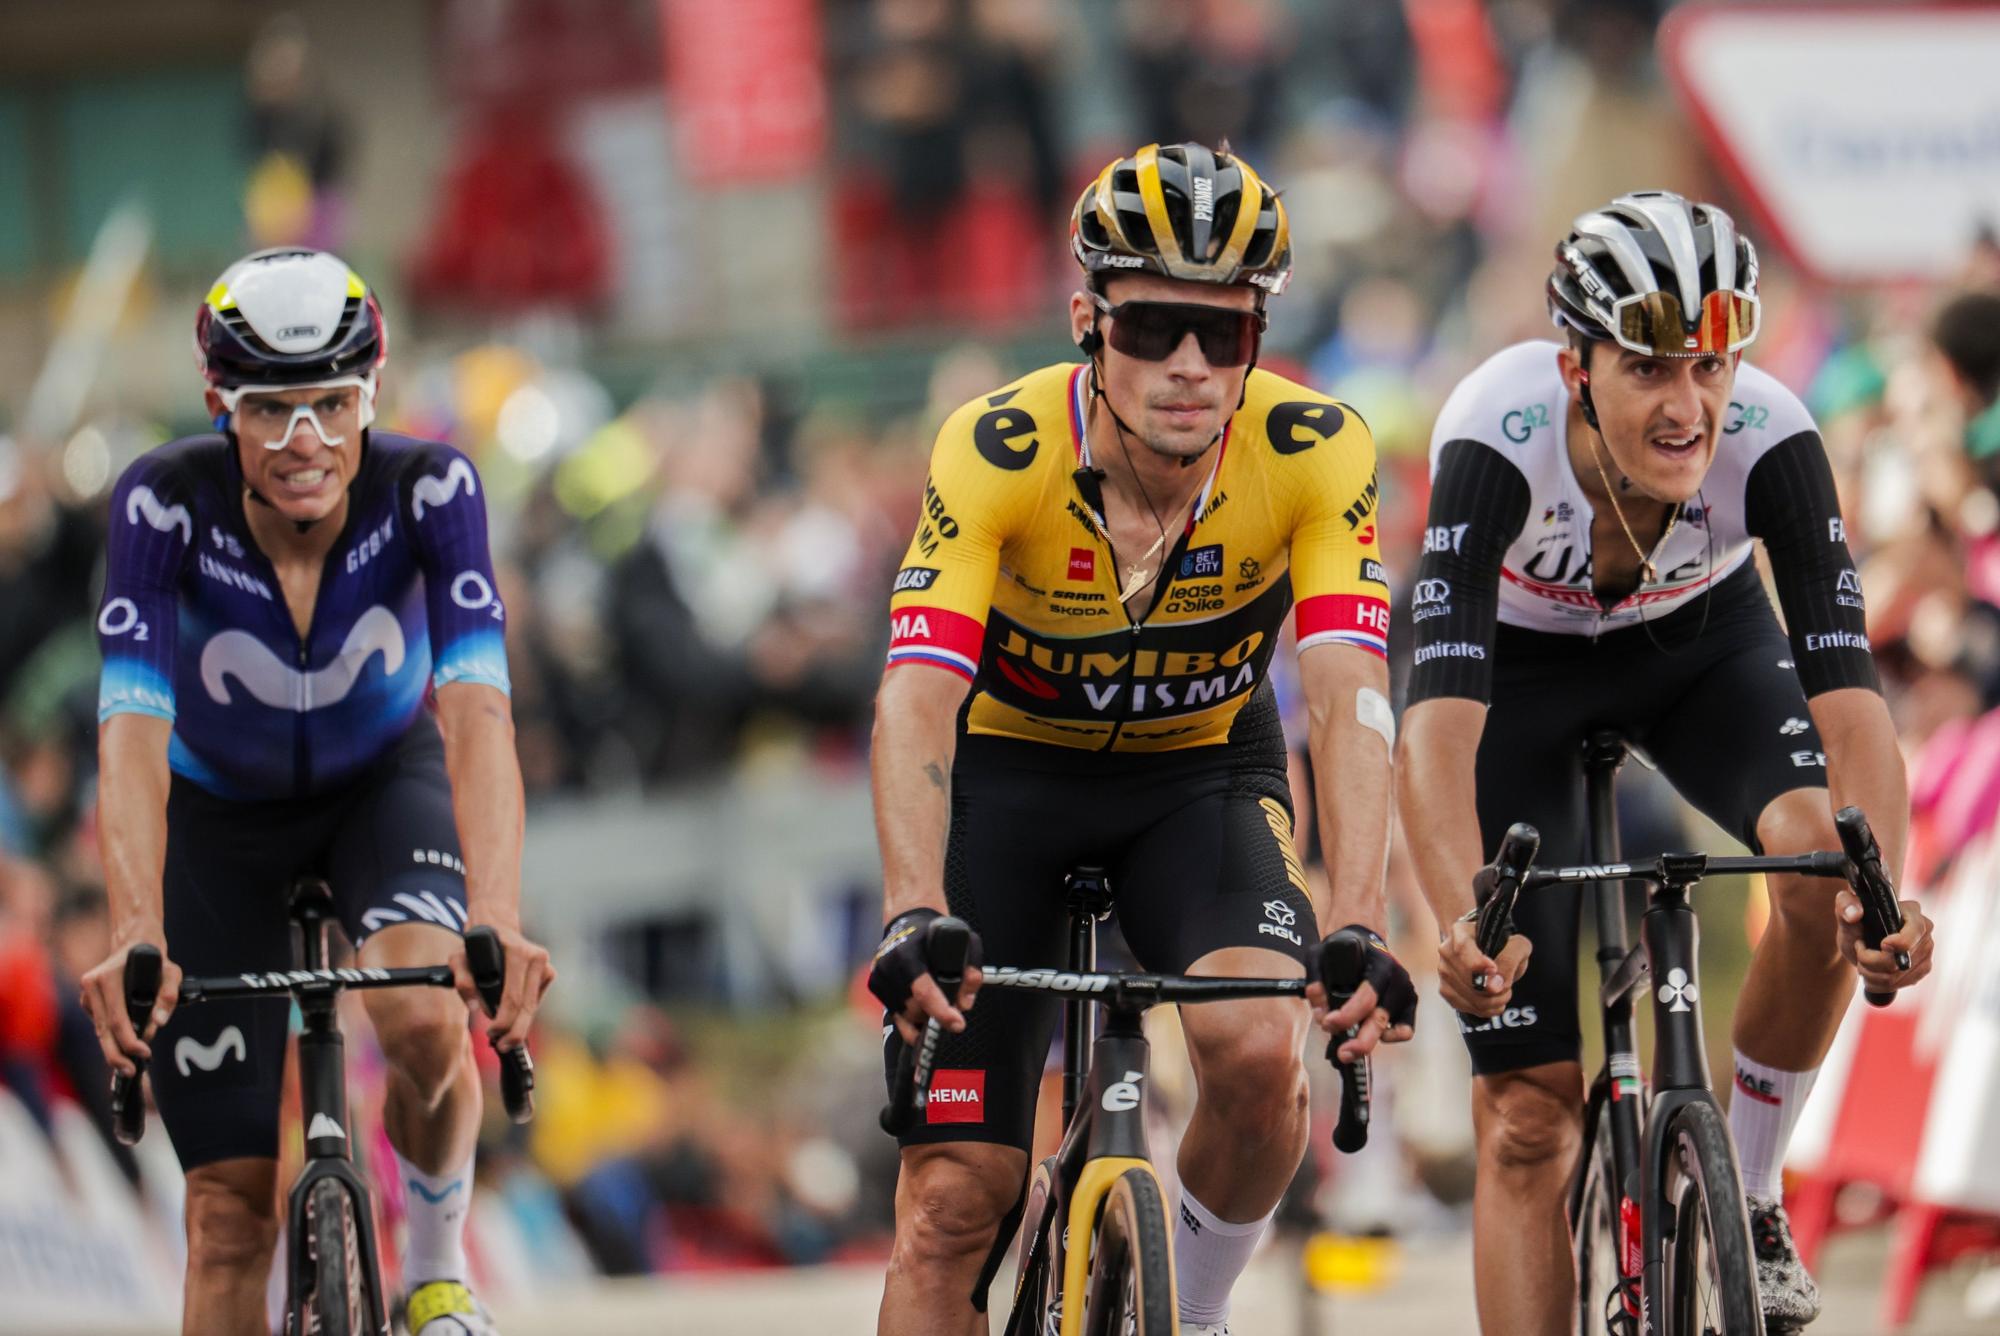 Galería: La etapa 3 de la Vuelta a España 2023, en imágenes